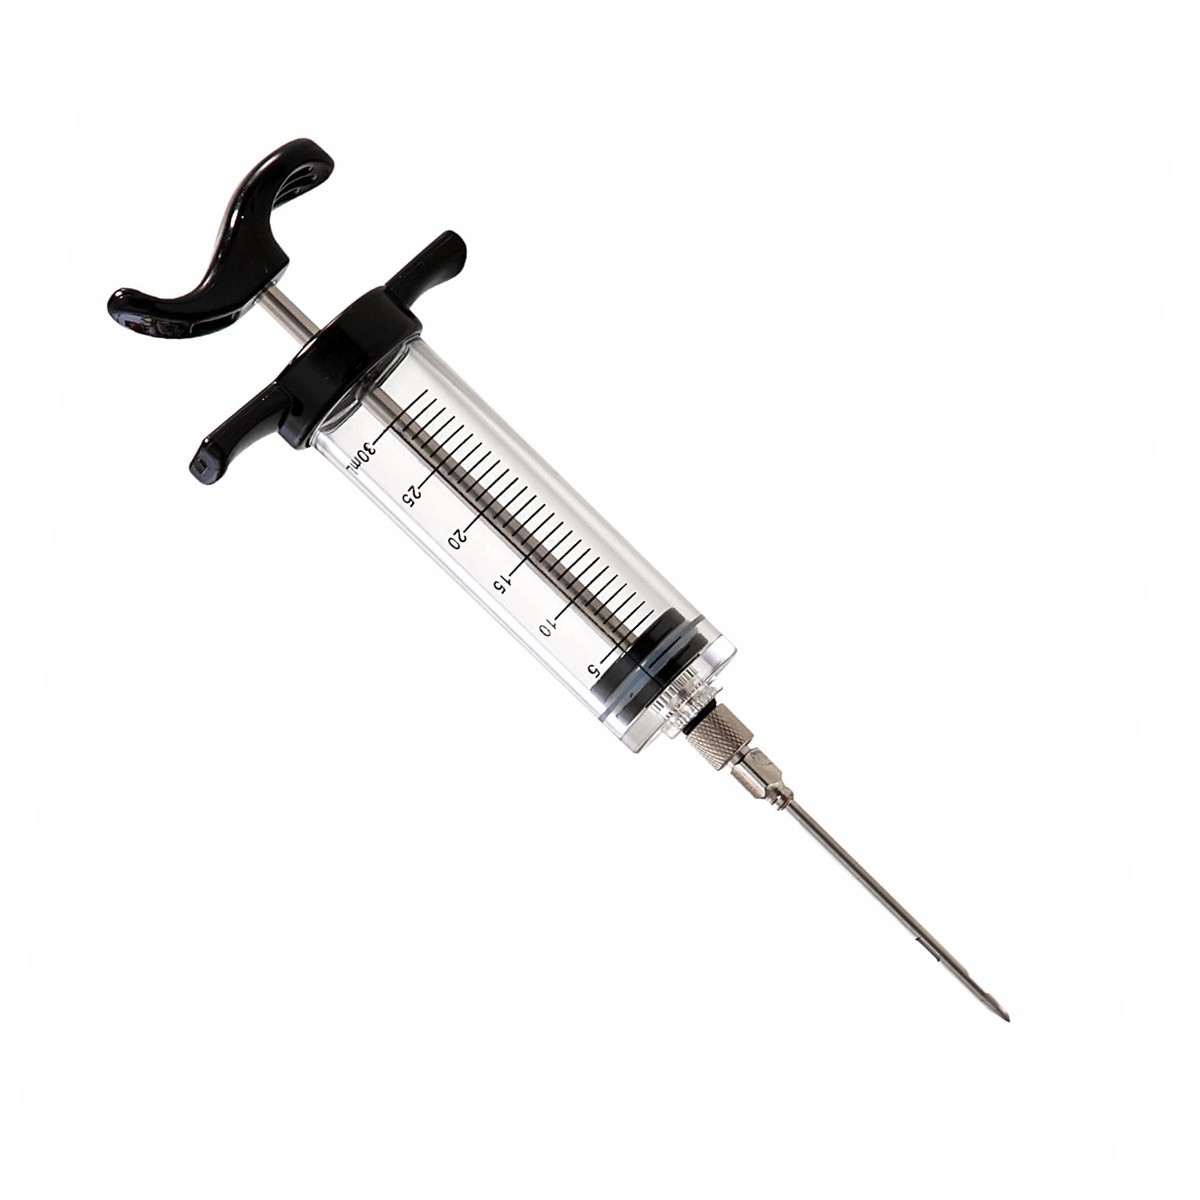 Marinier- und Aromaspritze – 30ml – 6cm Nadel (Injektor)